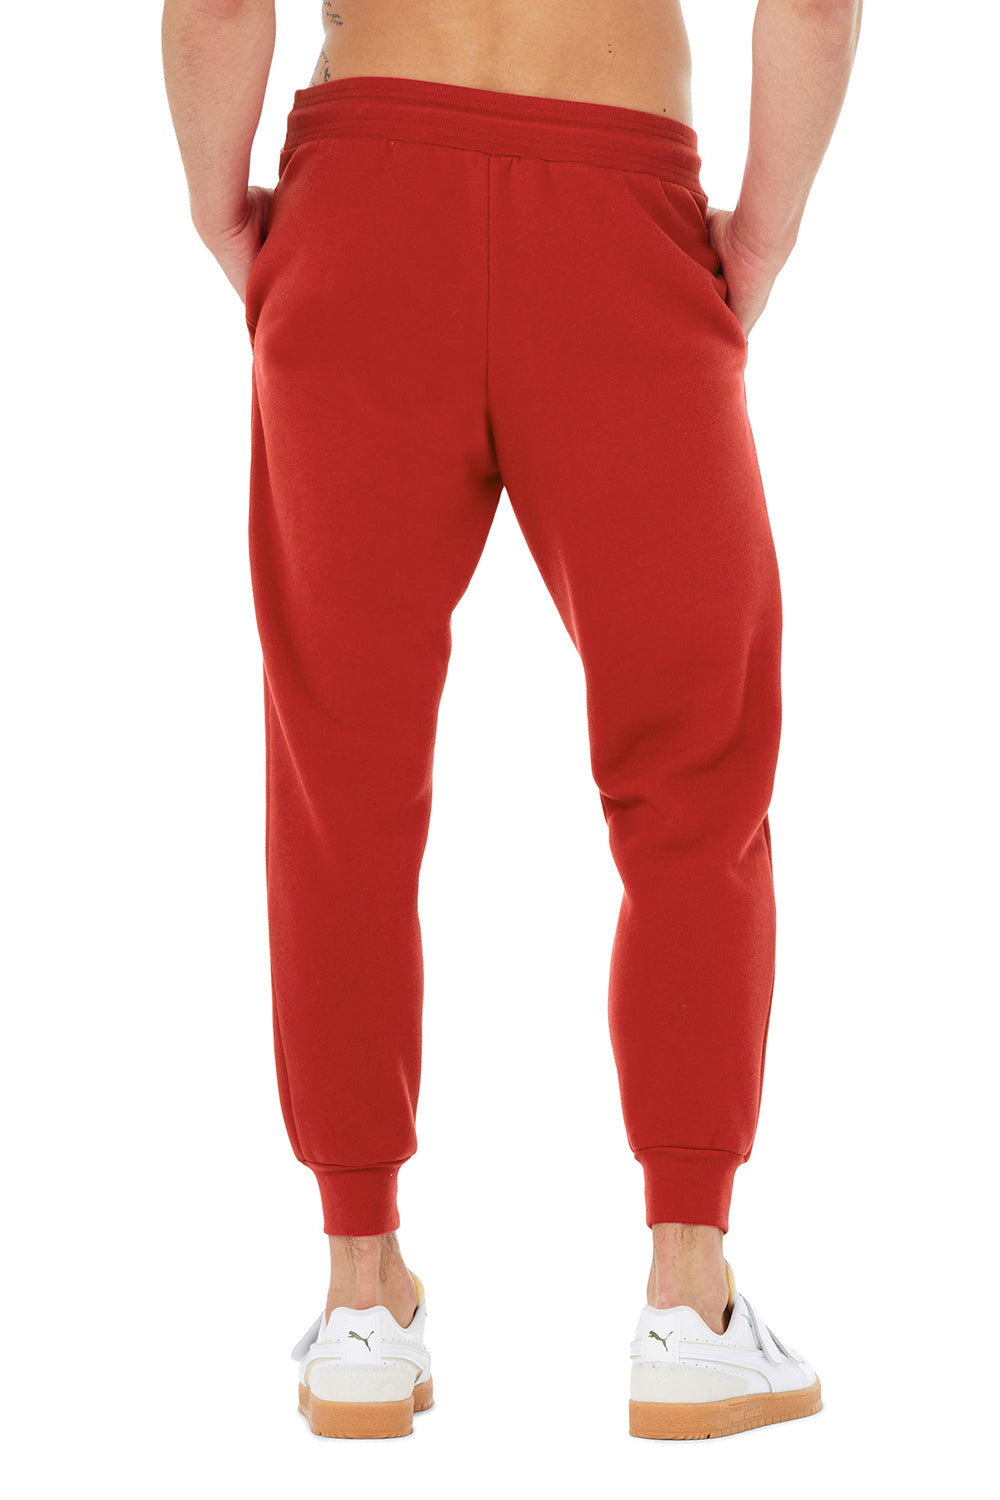 Bella + Canvas BC3727 Mens Jogger Sweatpants w/ Pockets Red Model Back